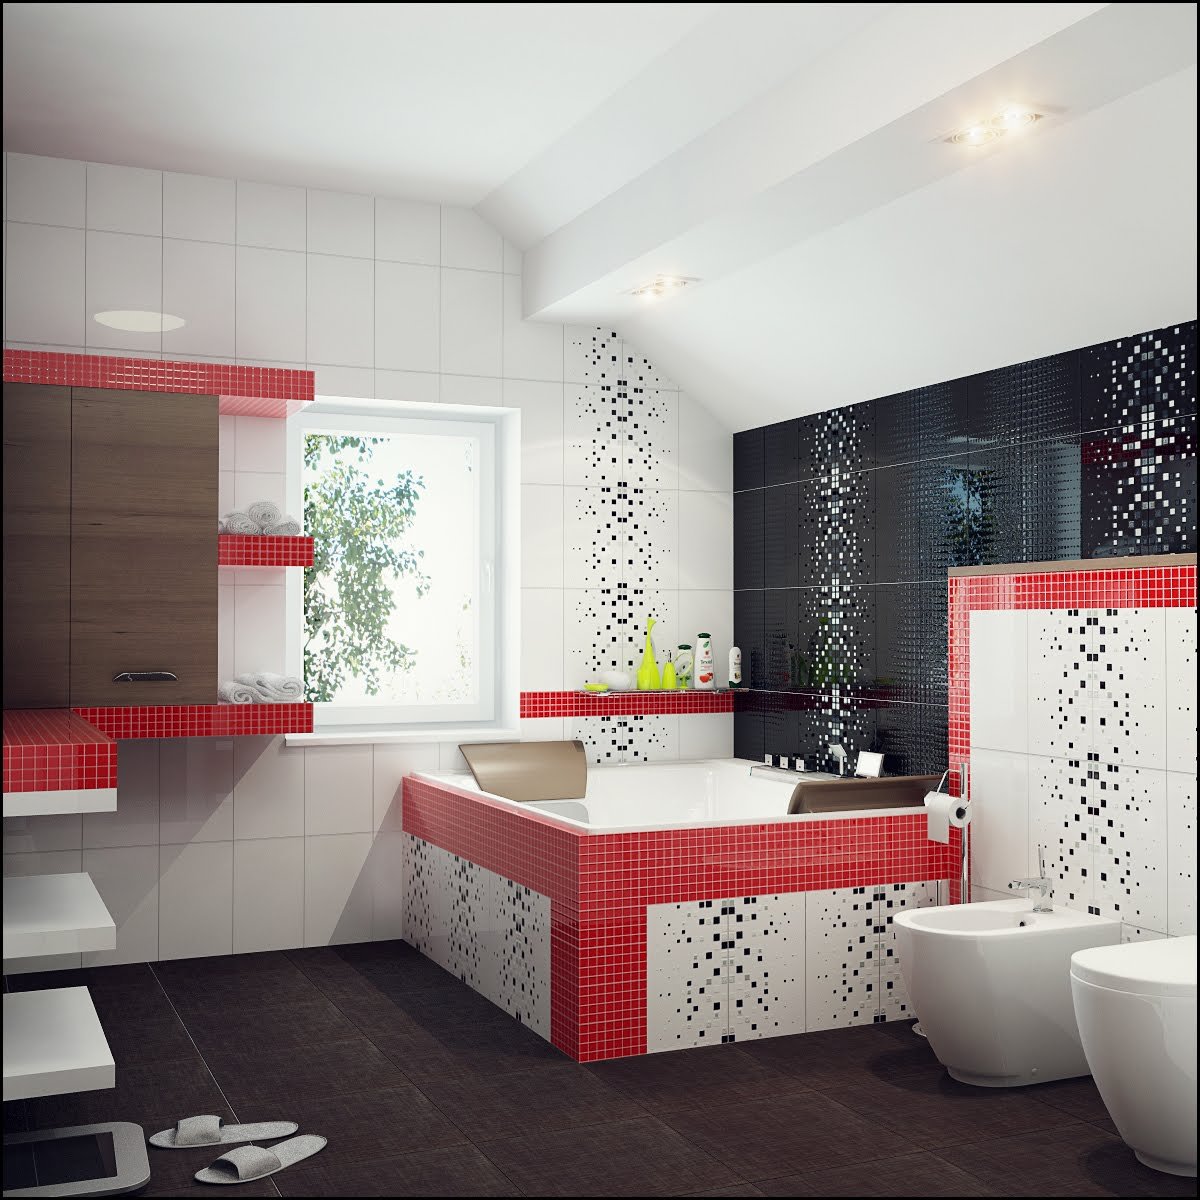 Пример плитки в ванной. Плитка для ванной. Ванные комнаты плитка. Интерьер ванной комнаты плитка. Мозаика в интерьере ванной комнаты.